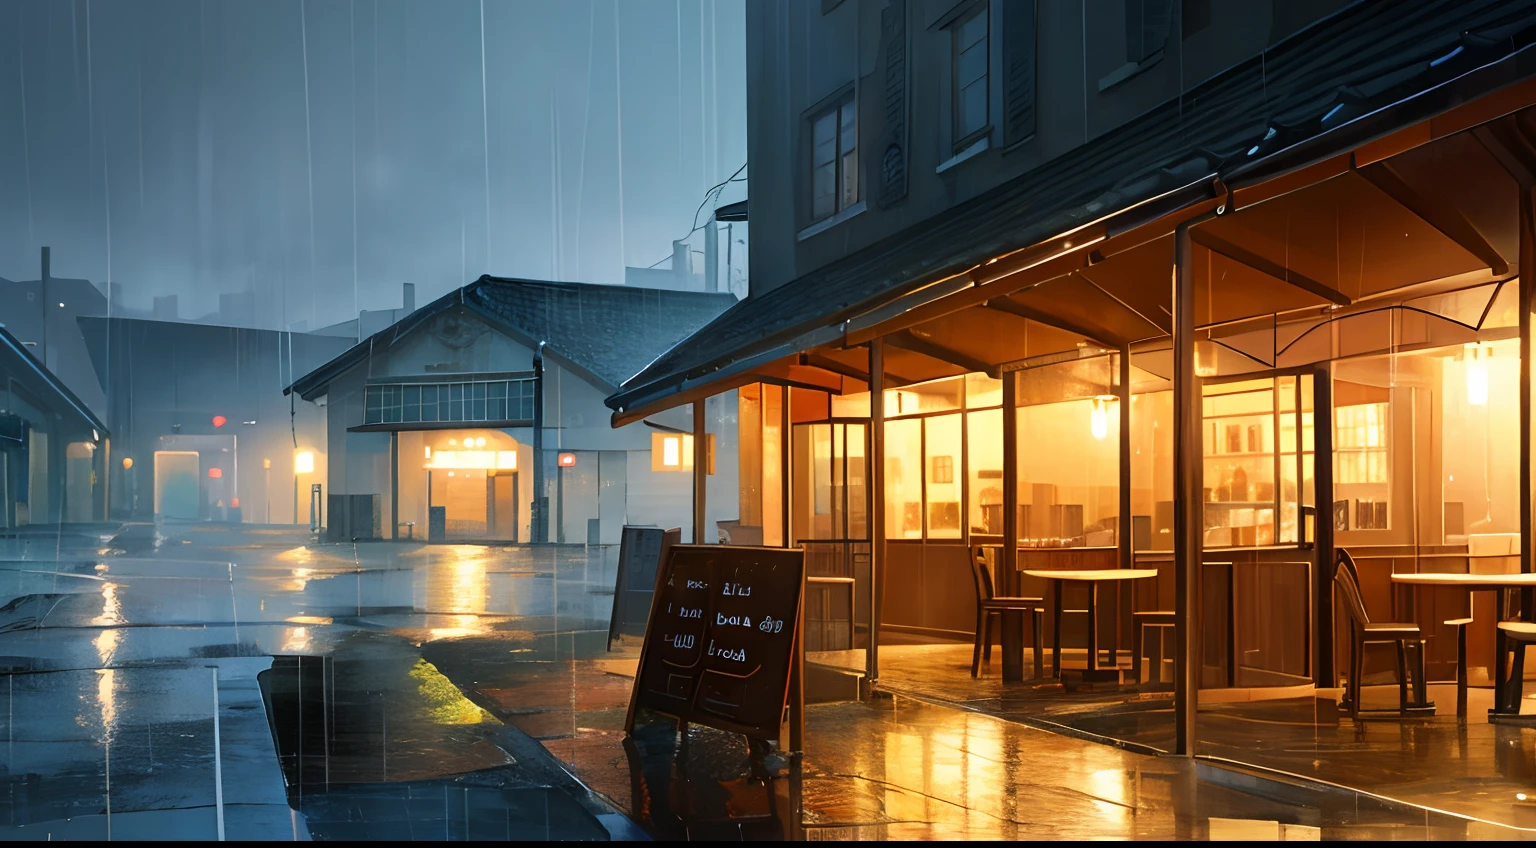 café em um dia chuvoso ilustração gráfico paisagem de alta qualidade chuva dia chuvoso café luz quente